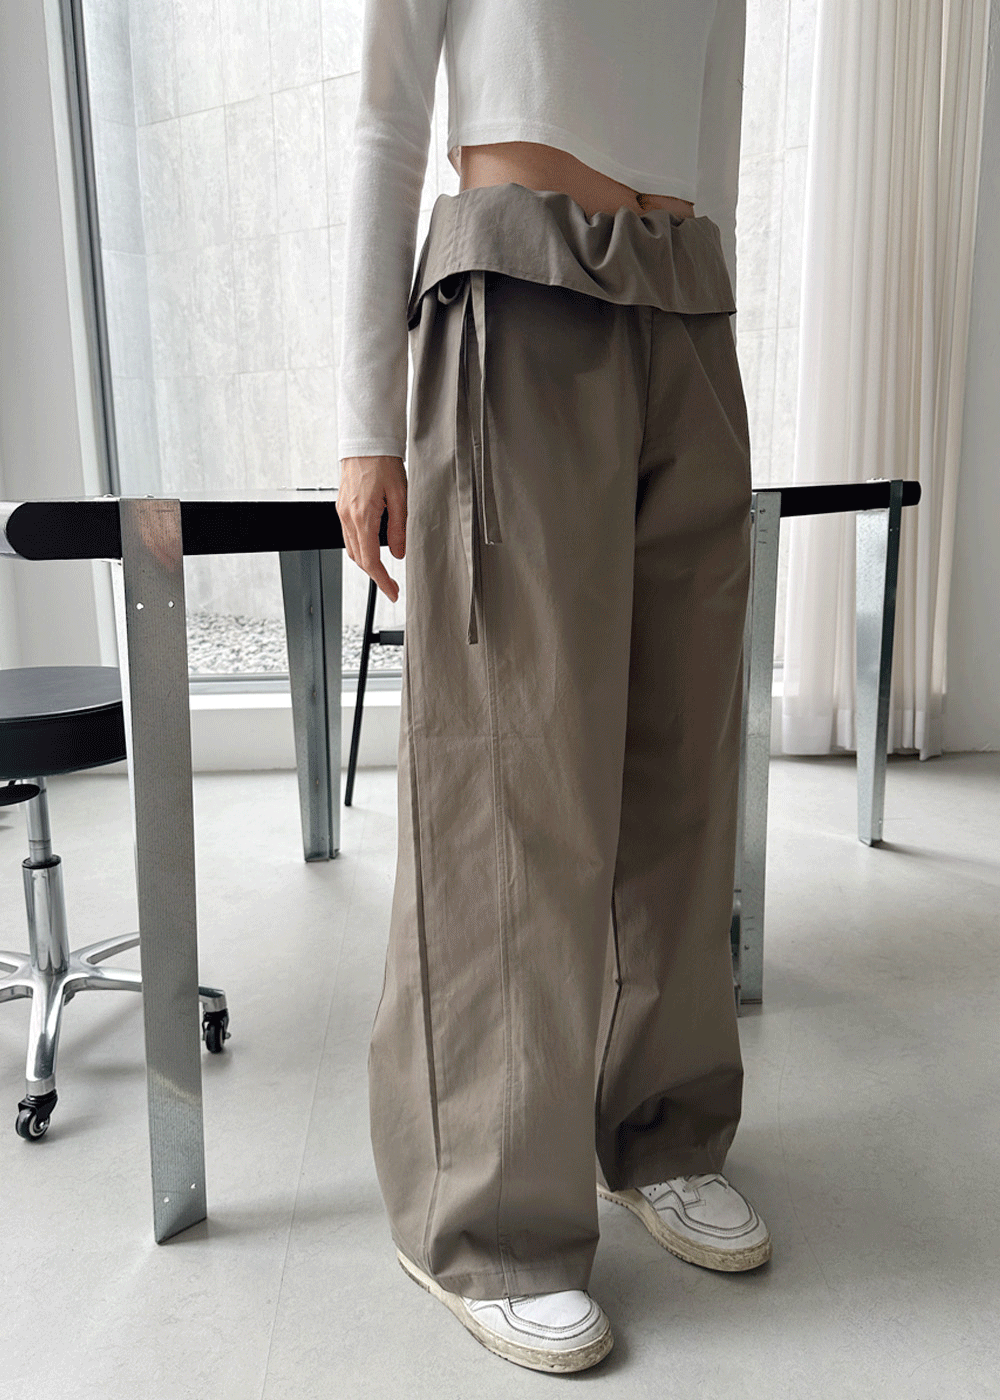 Jeju fold pants